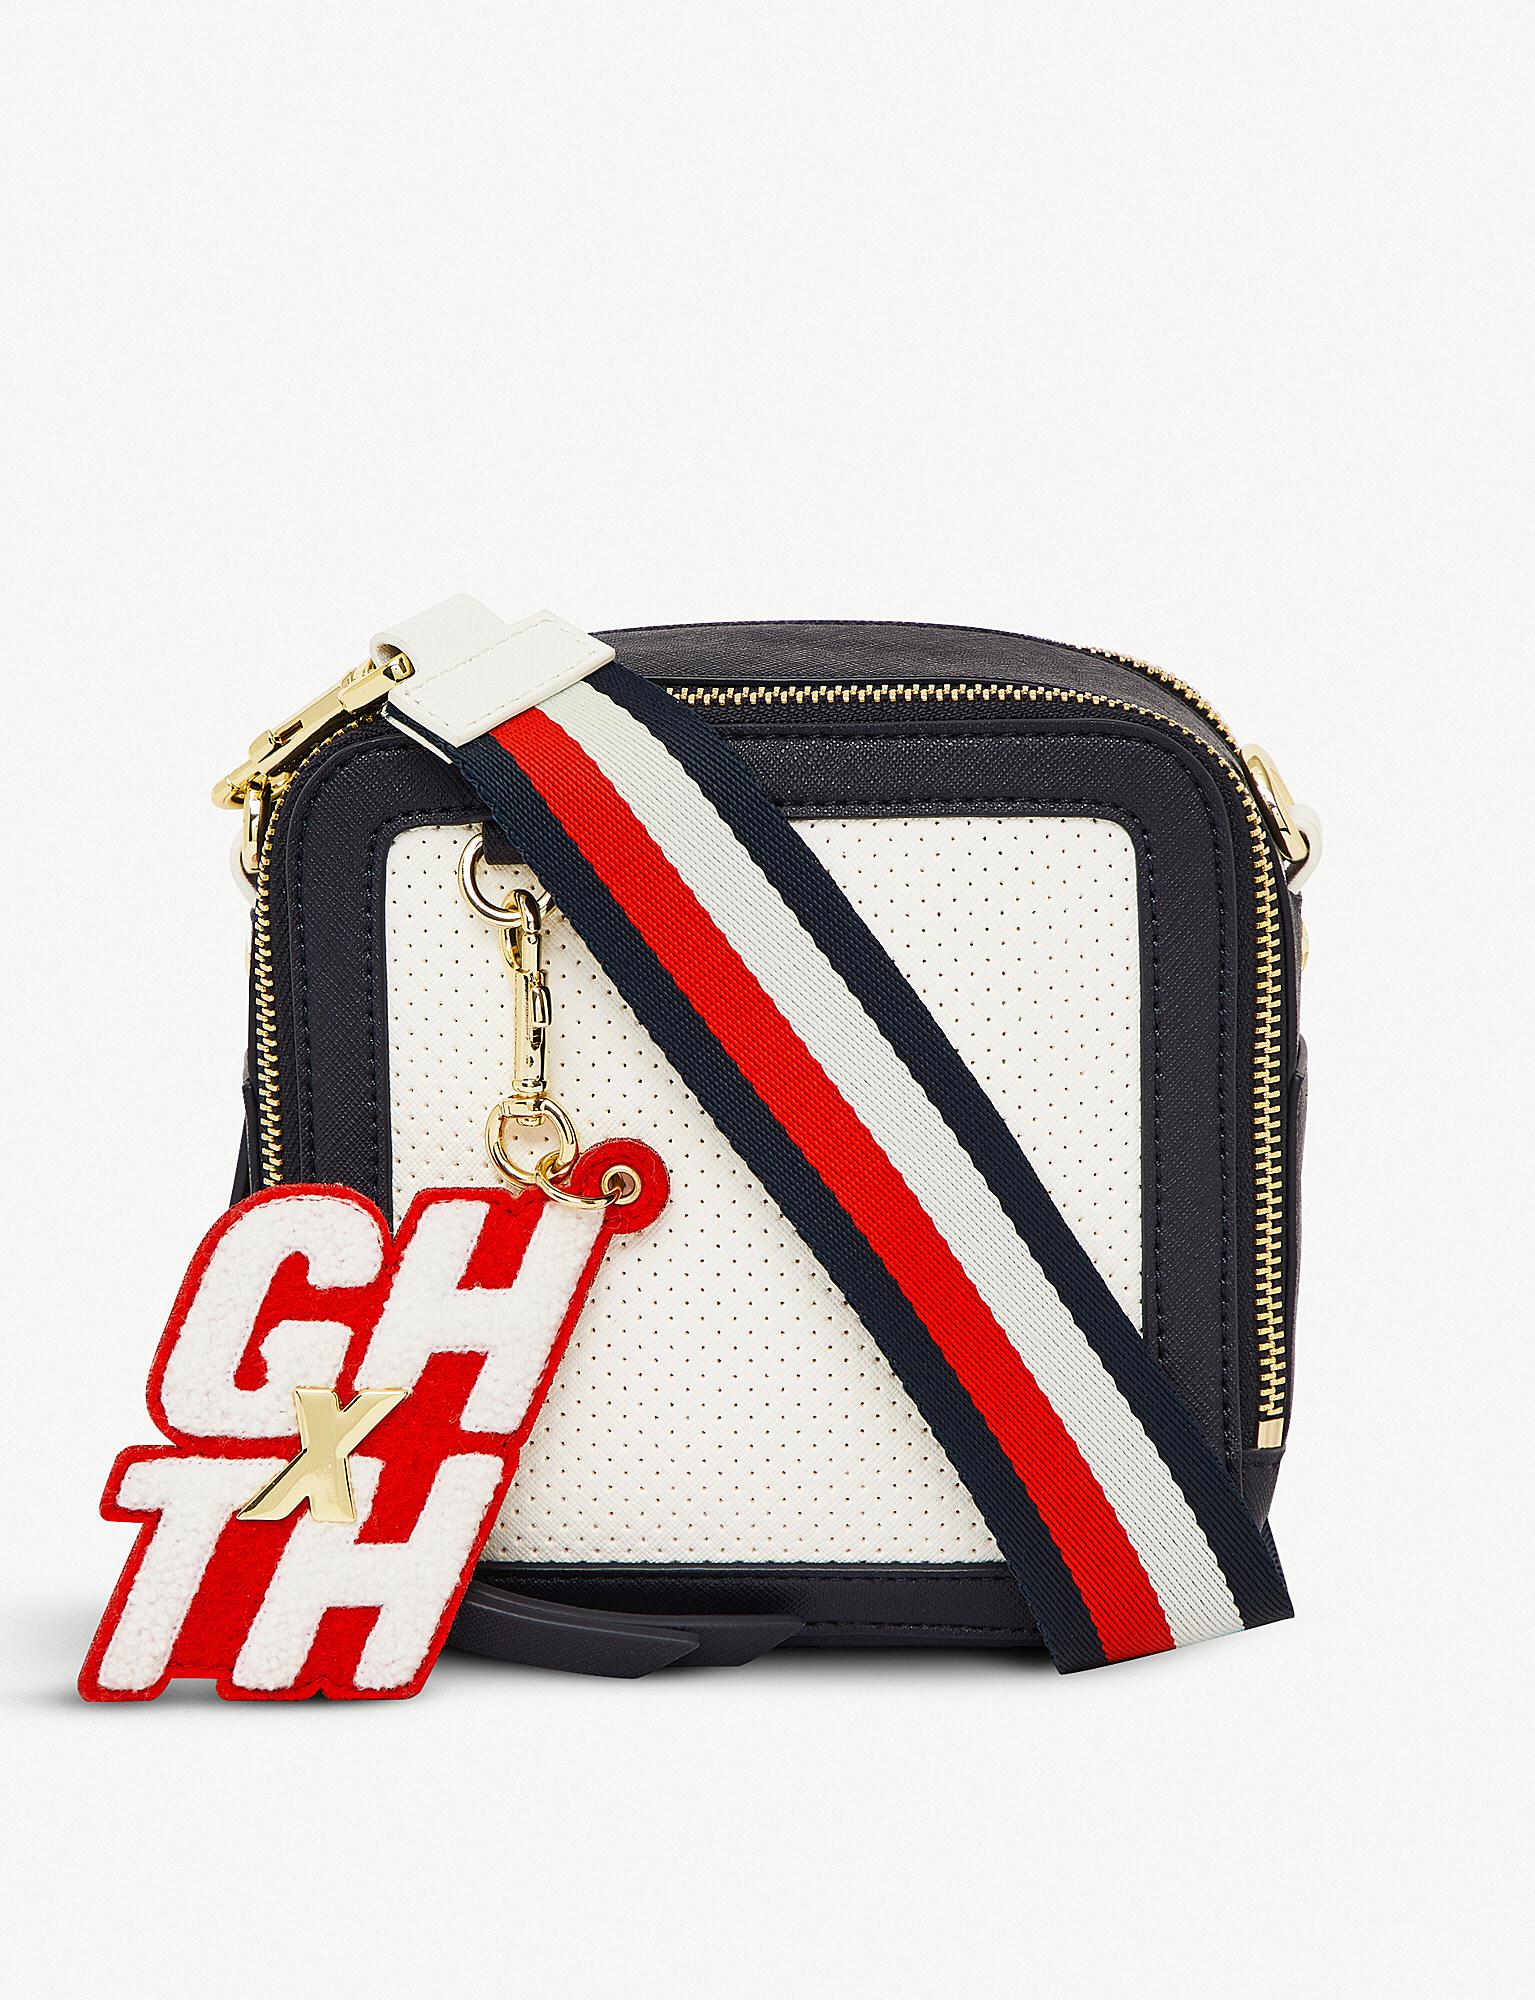 Tommy Hilfiger X Gigi Hadid Cross-body Bag | Lyst